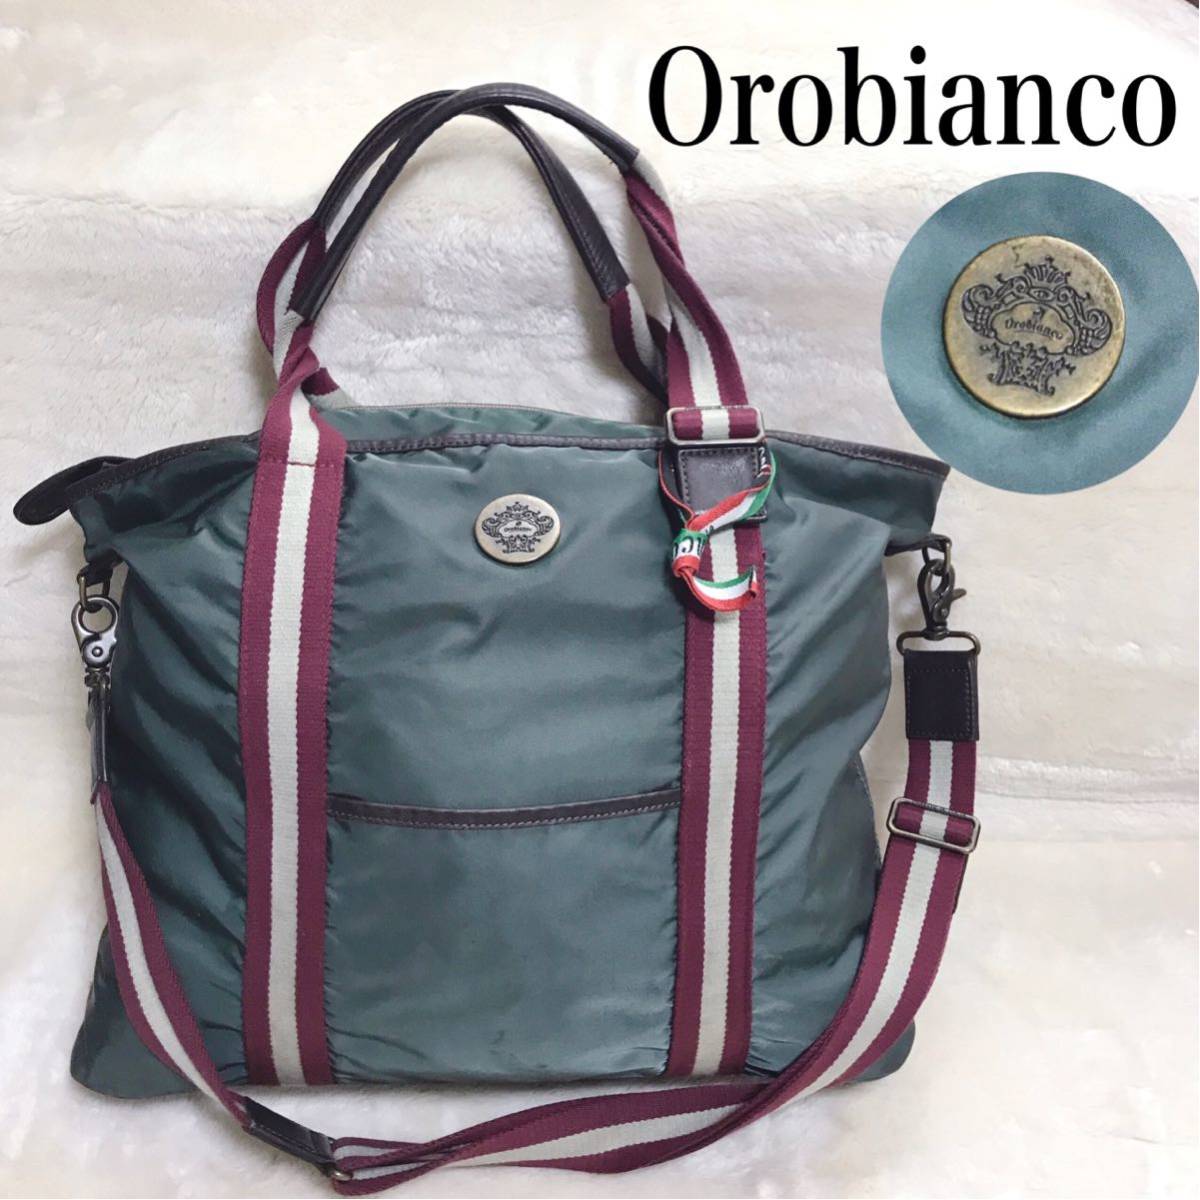 美品 Orobianco 大容量 2way トートバッグ ショルダーバッグ オロビアンコ ハンドバッグ ビジネスバッグ ナイロン レザー カーキー